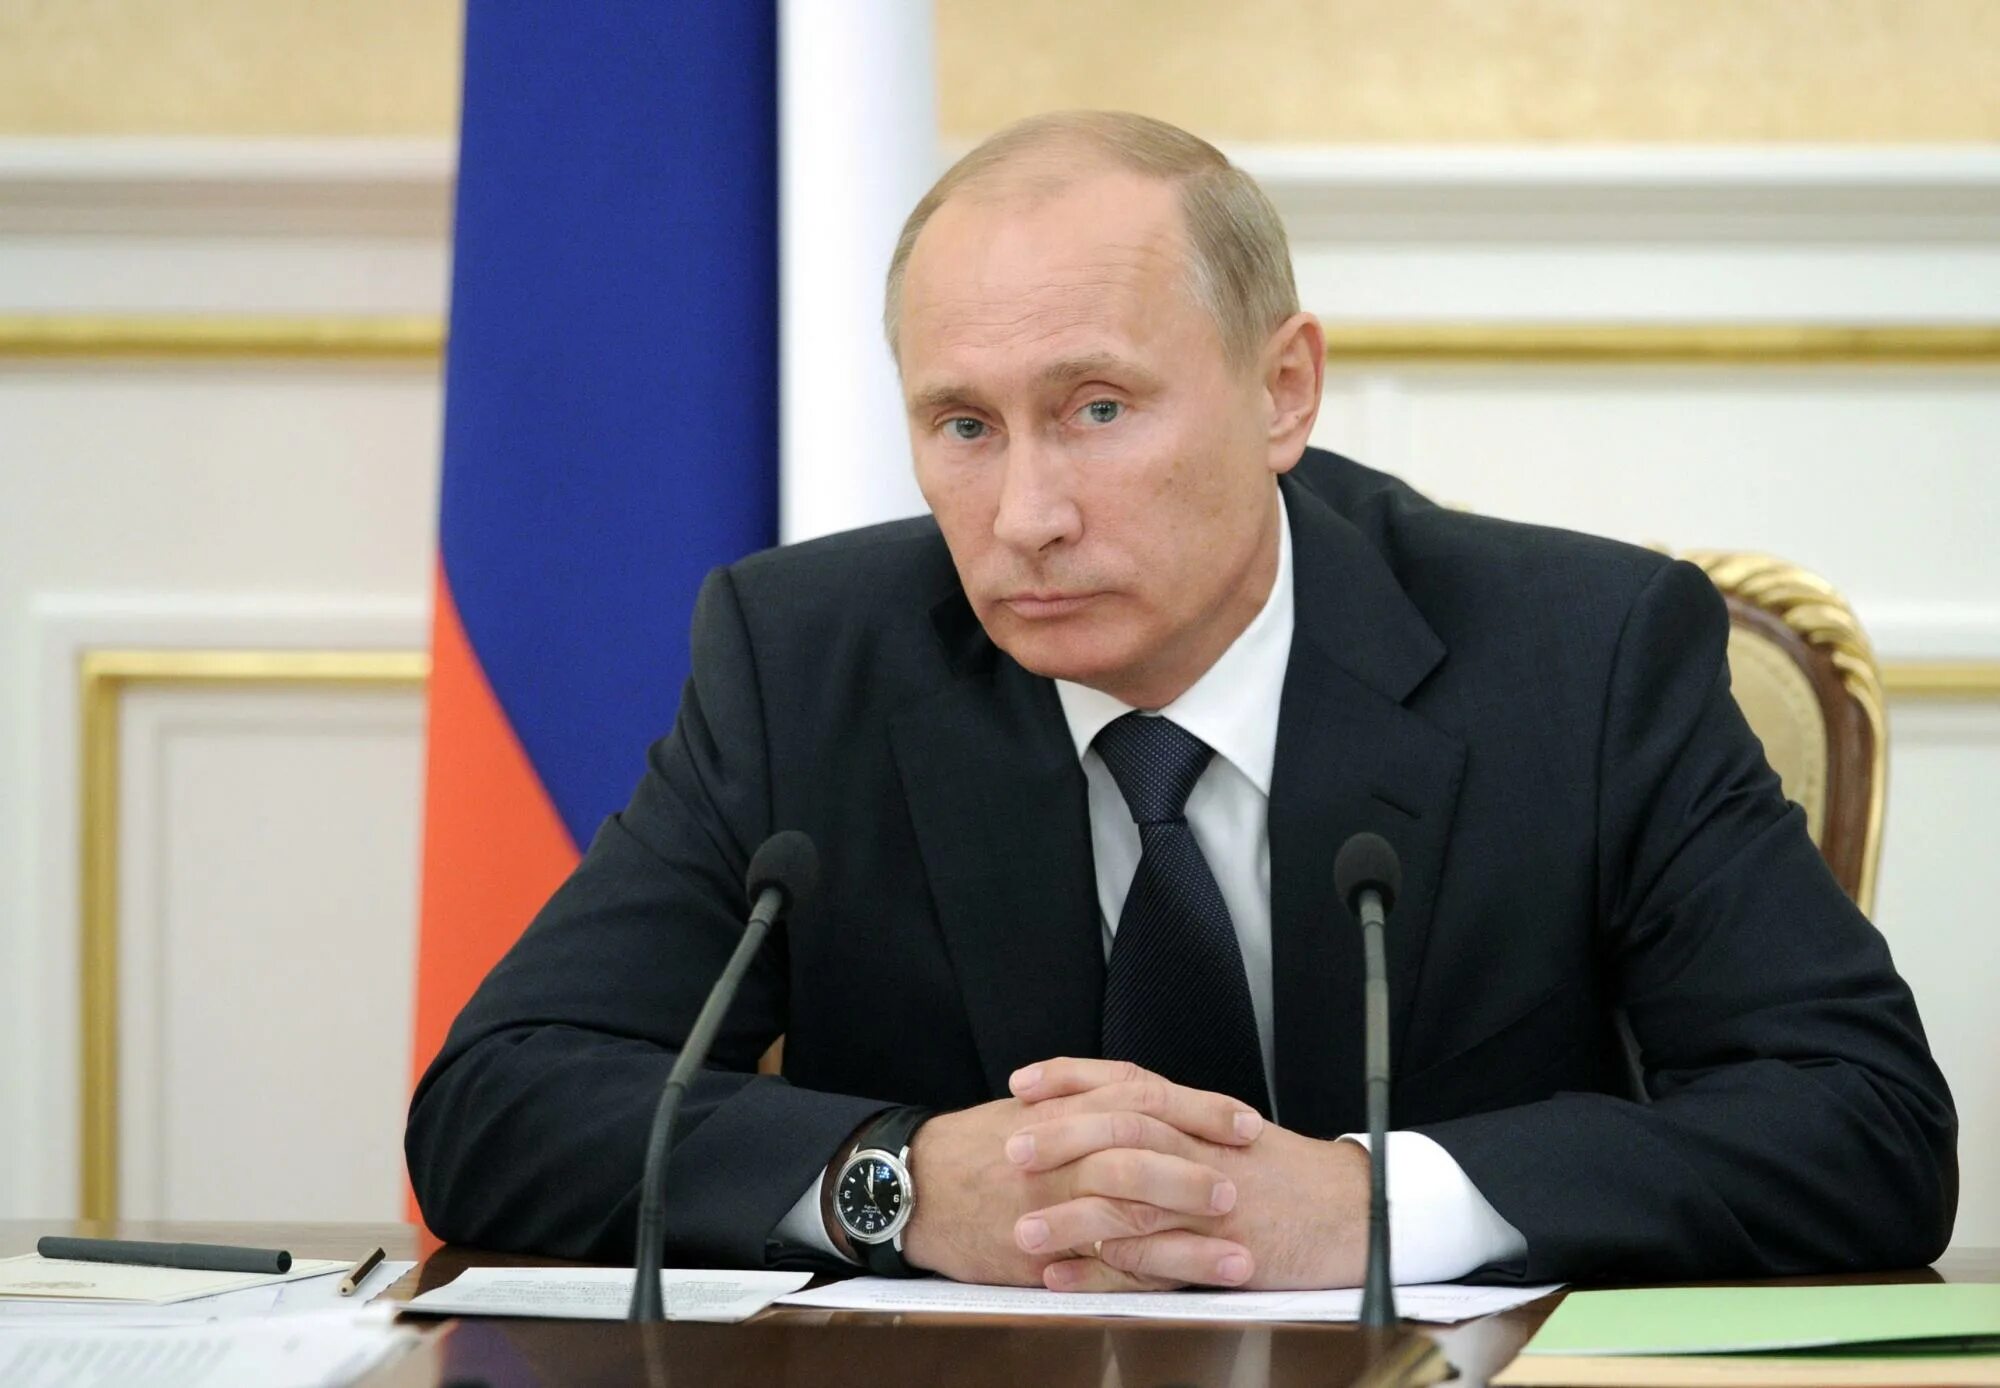 Политику со. Путин сложил руки. Владимир Путин жесты. Путин со сложенными руками. Путин руки на столе.